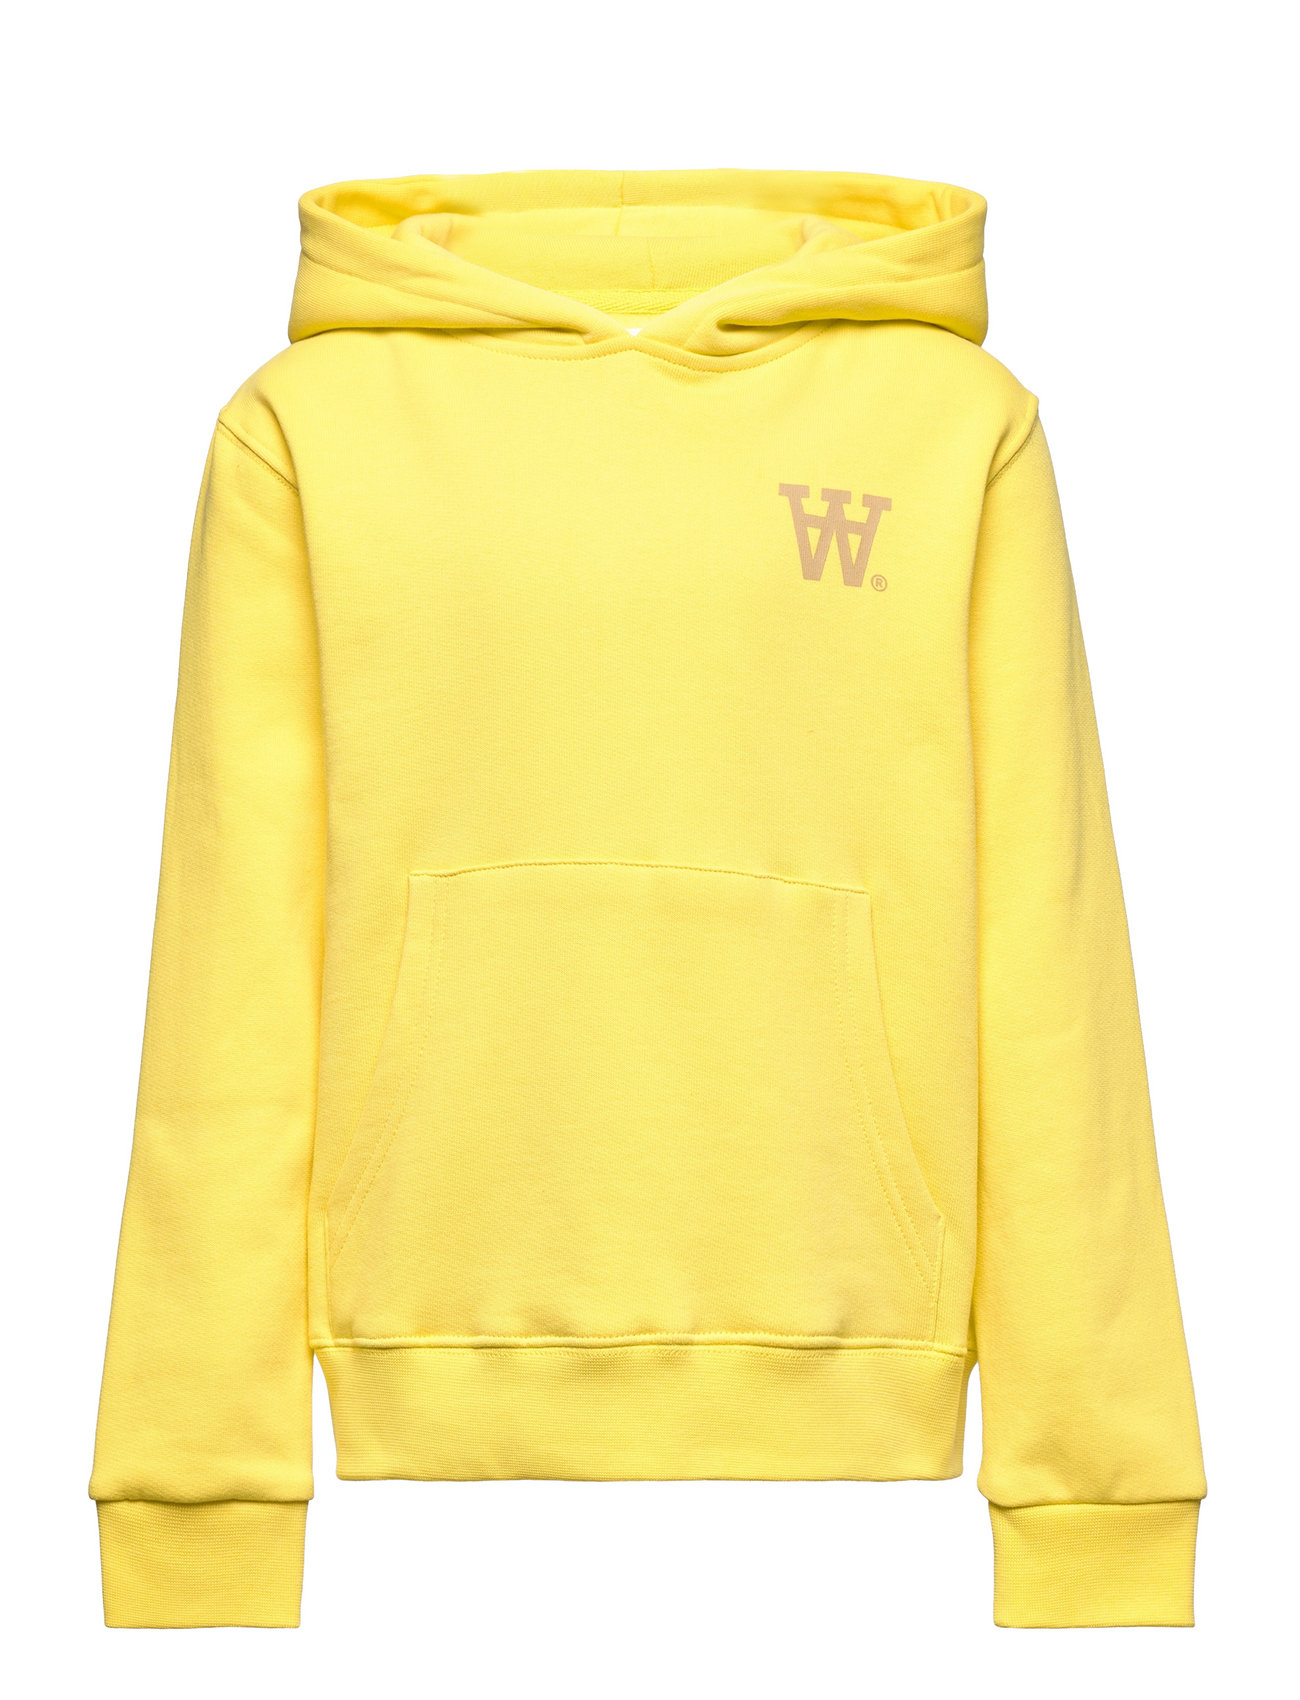 Izzy Kids Hoodie Tops Sweatshirts & Hoodies Hoodies Yellow Wood Wood